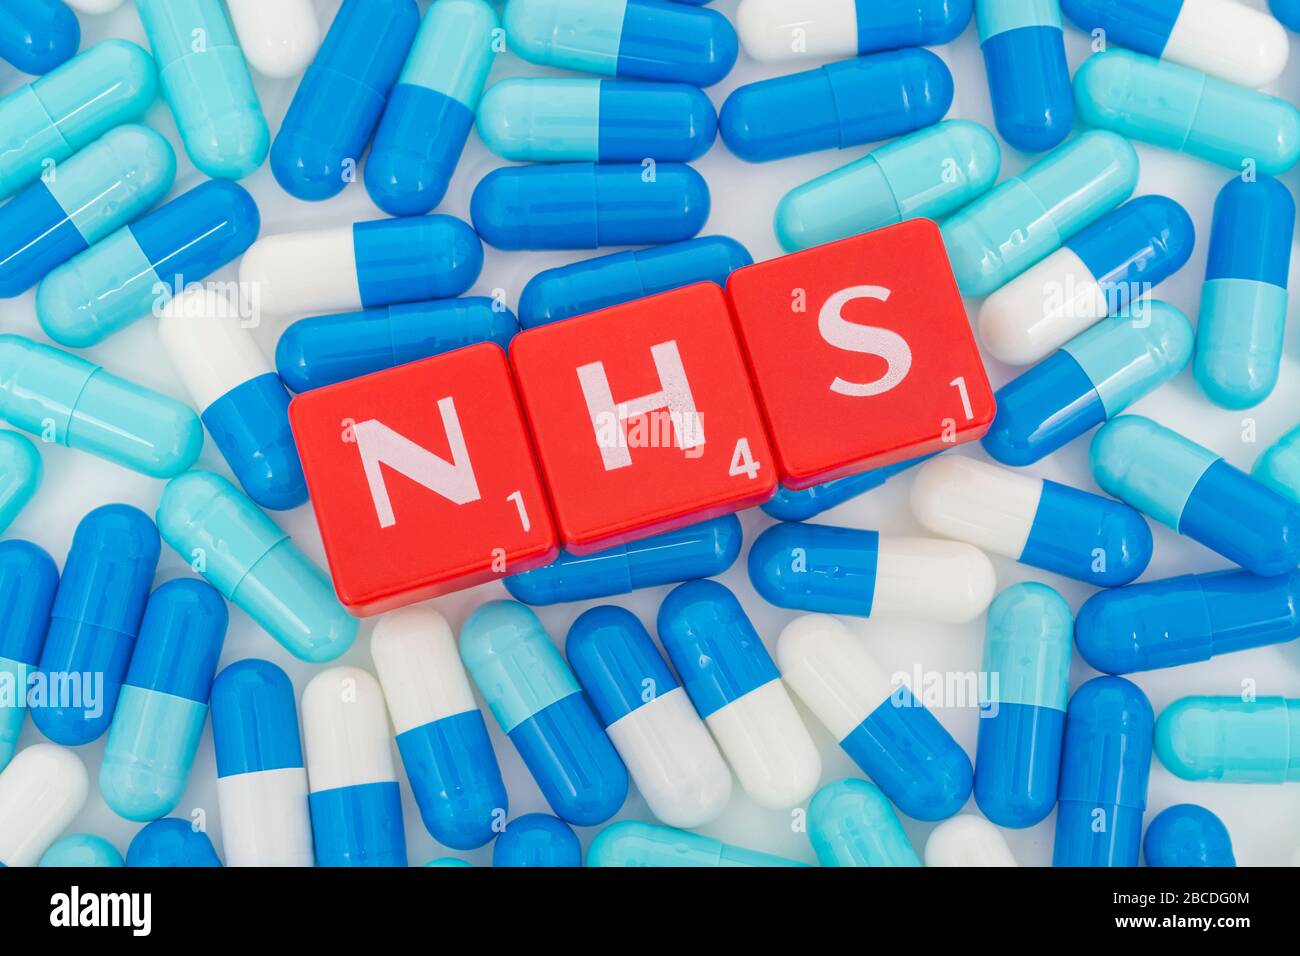 Carreaux de lettres NHS et pilules bleues assorties. Pour le 75e anniversaire du NHS, héros du NHS, prescriptions du NHS, Service national de santé du Royaume-Uni, médecine au Royaume-Uni Banque D'Images